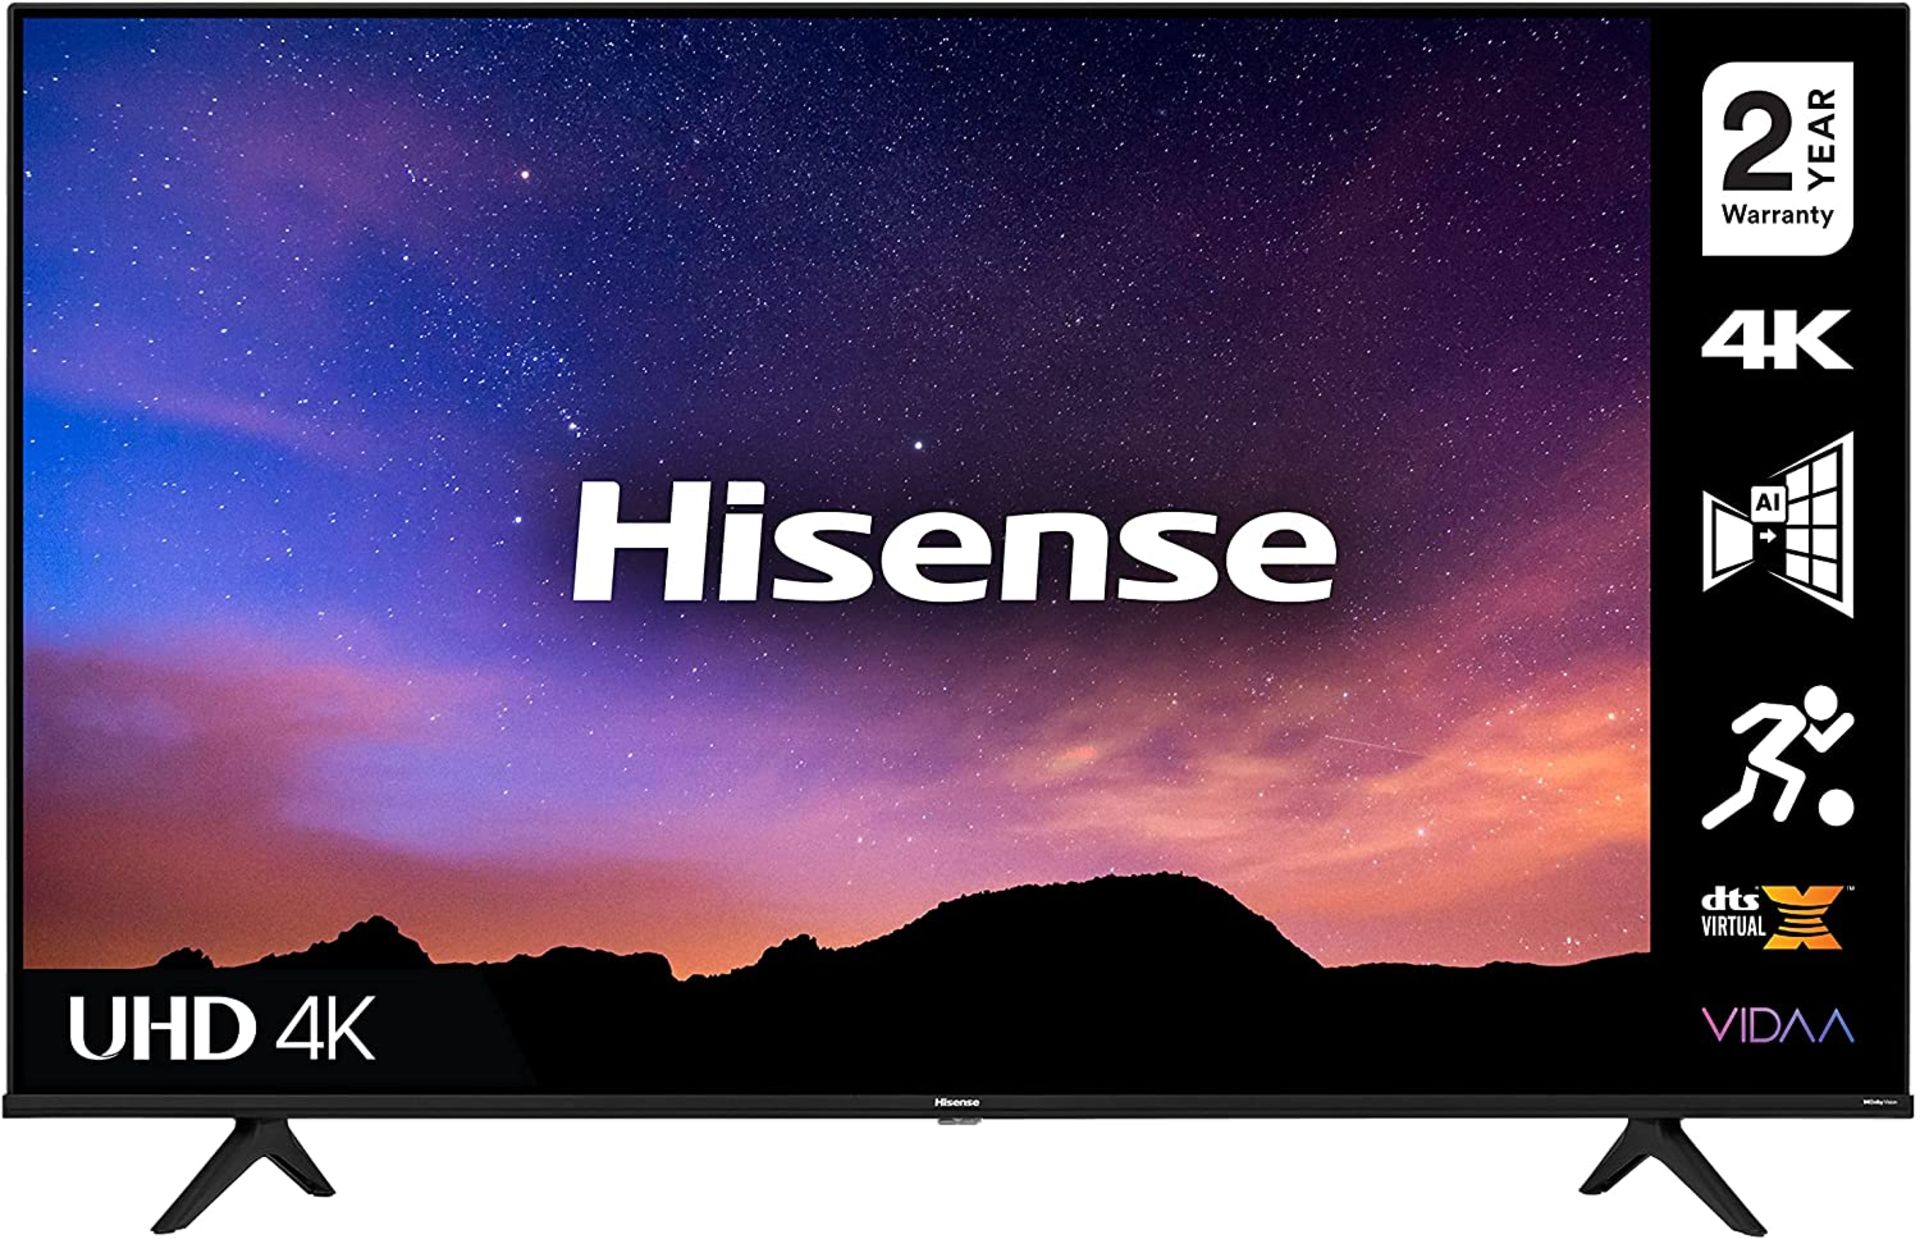 Hisense 50" 4K HDR Smart TV RPP £469